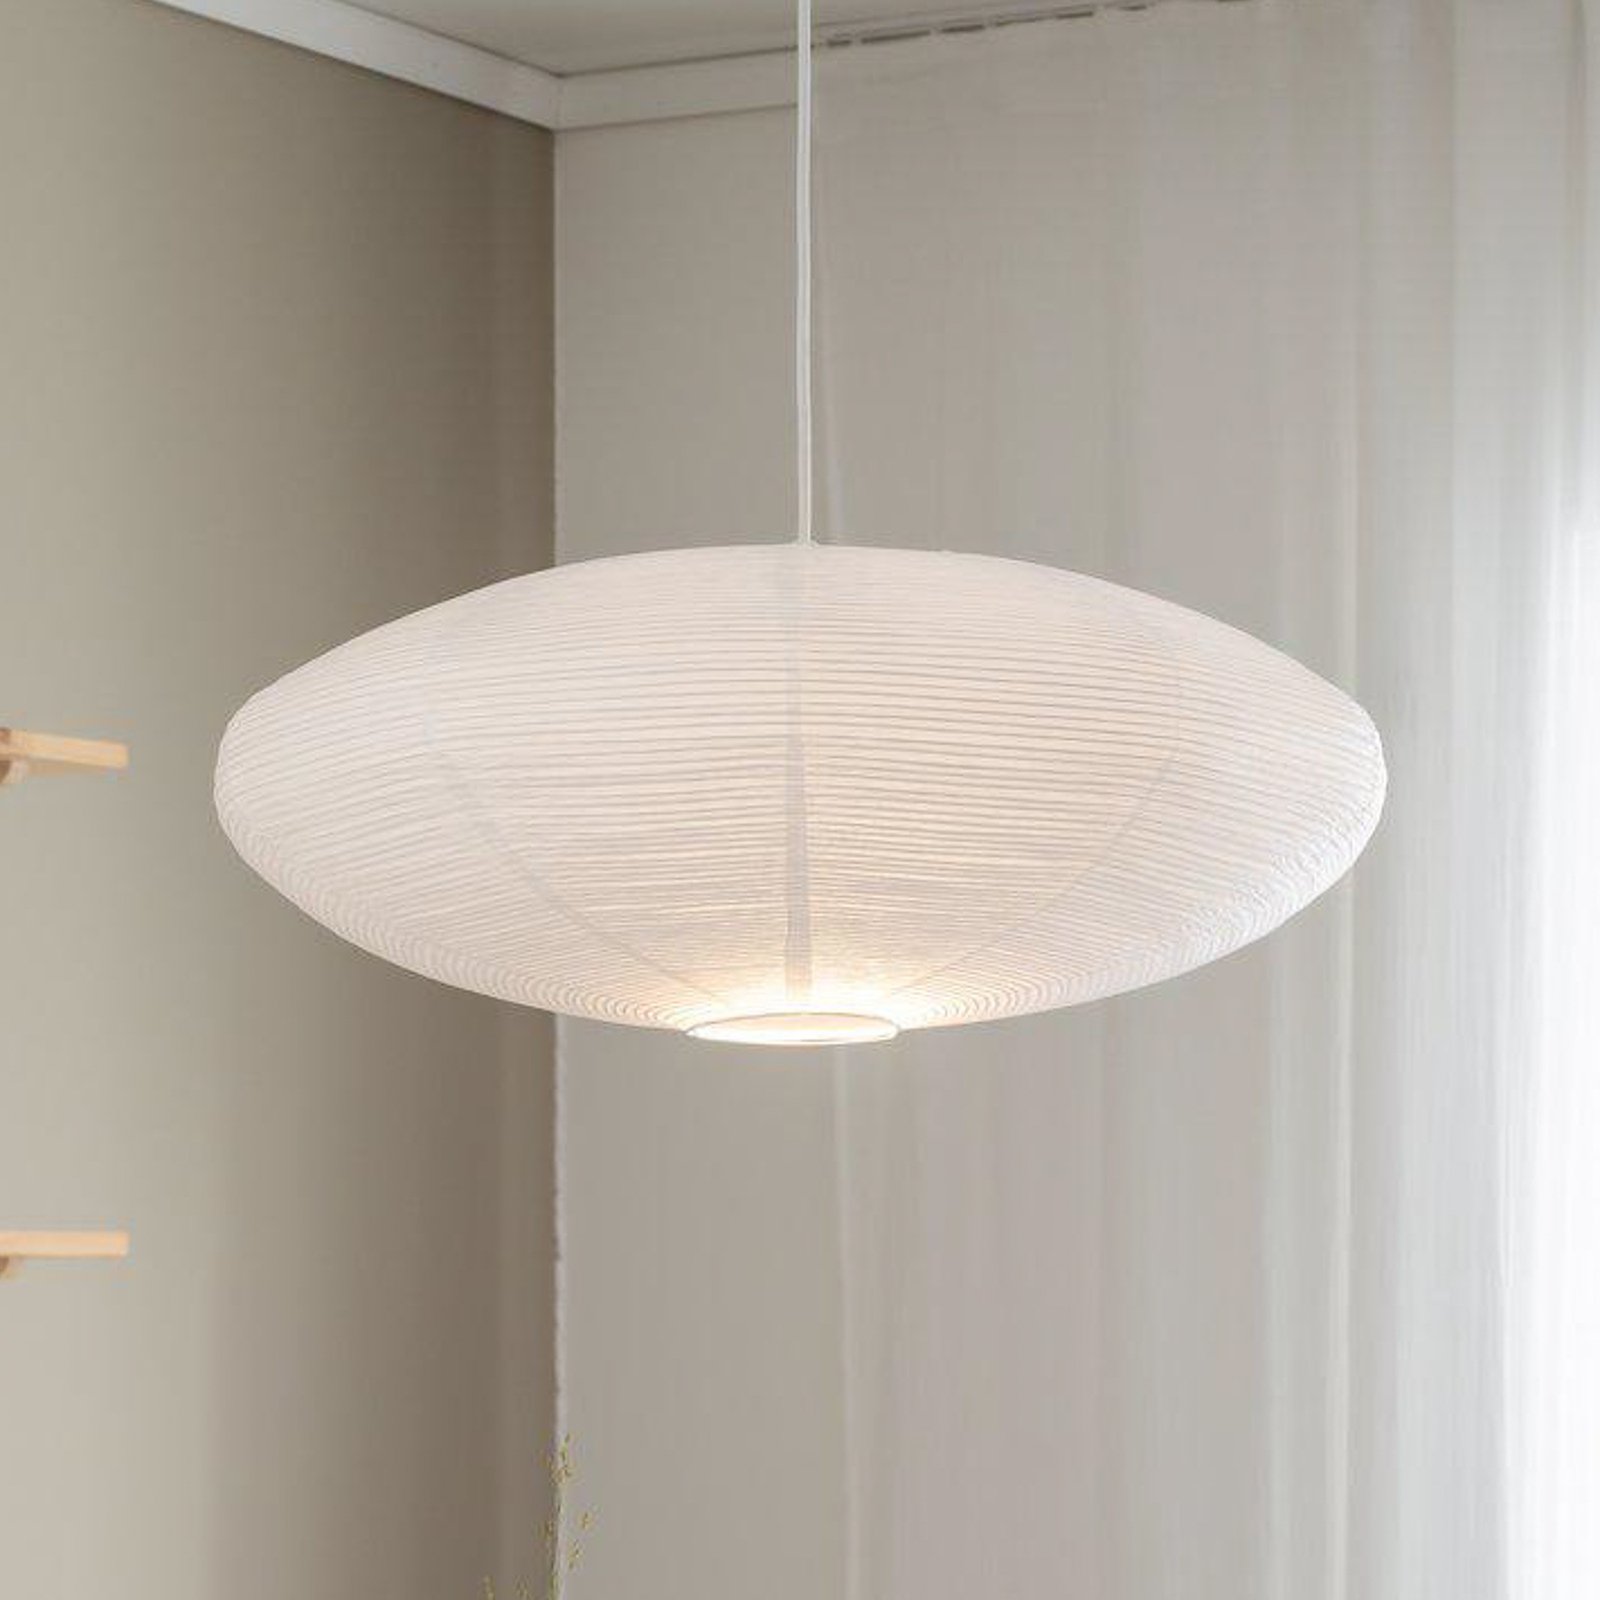 Lampa wisząca PR Home Yuni, biały, Ø 60 cm, białe zawieszenie, E14